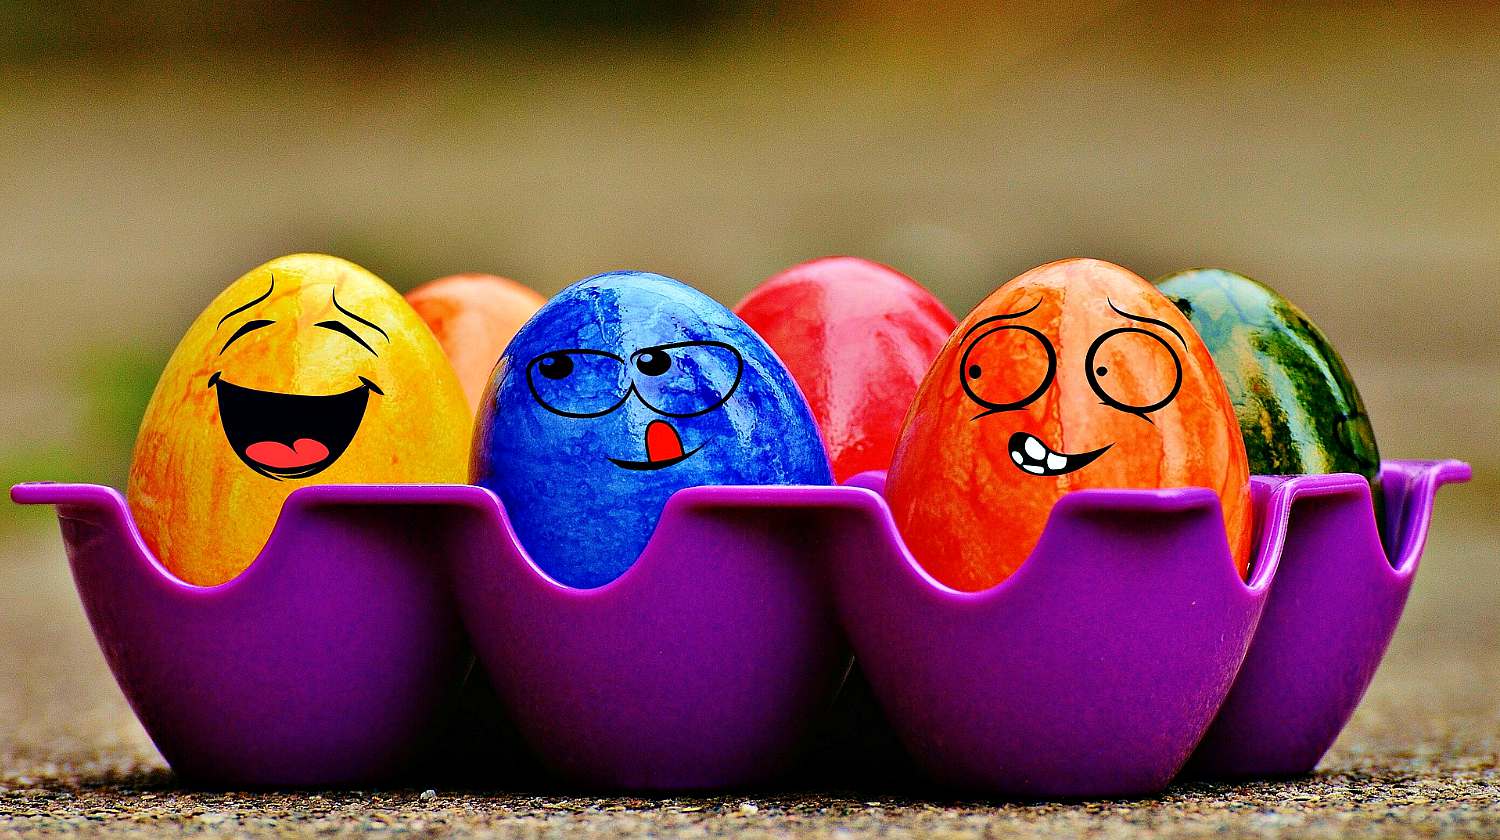 آموزش رنگ کردن تخم مرغ با استفاده گواش